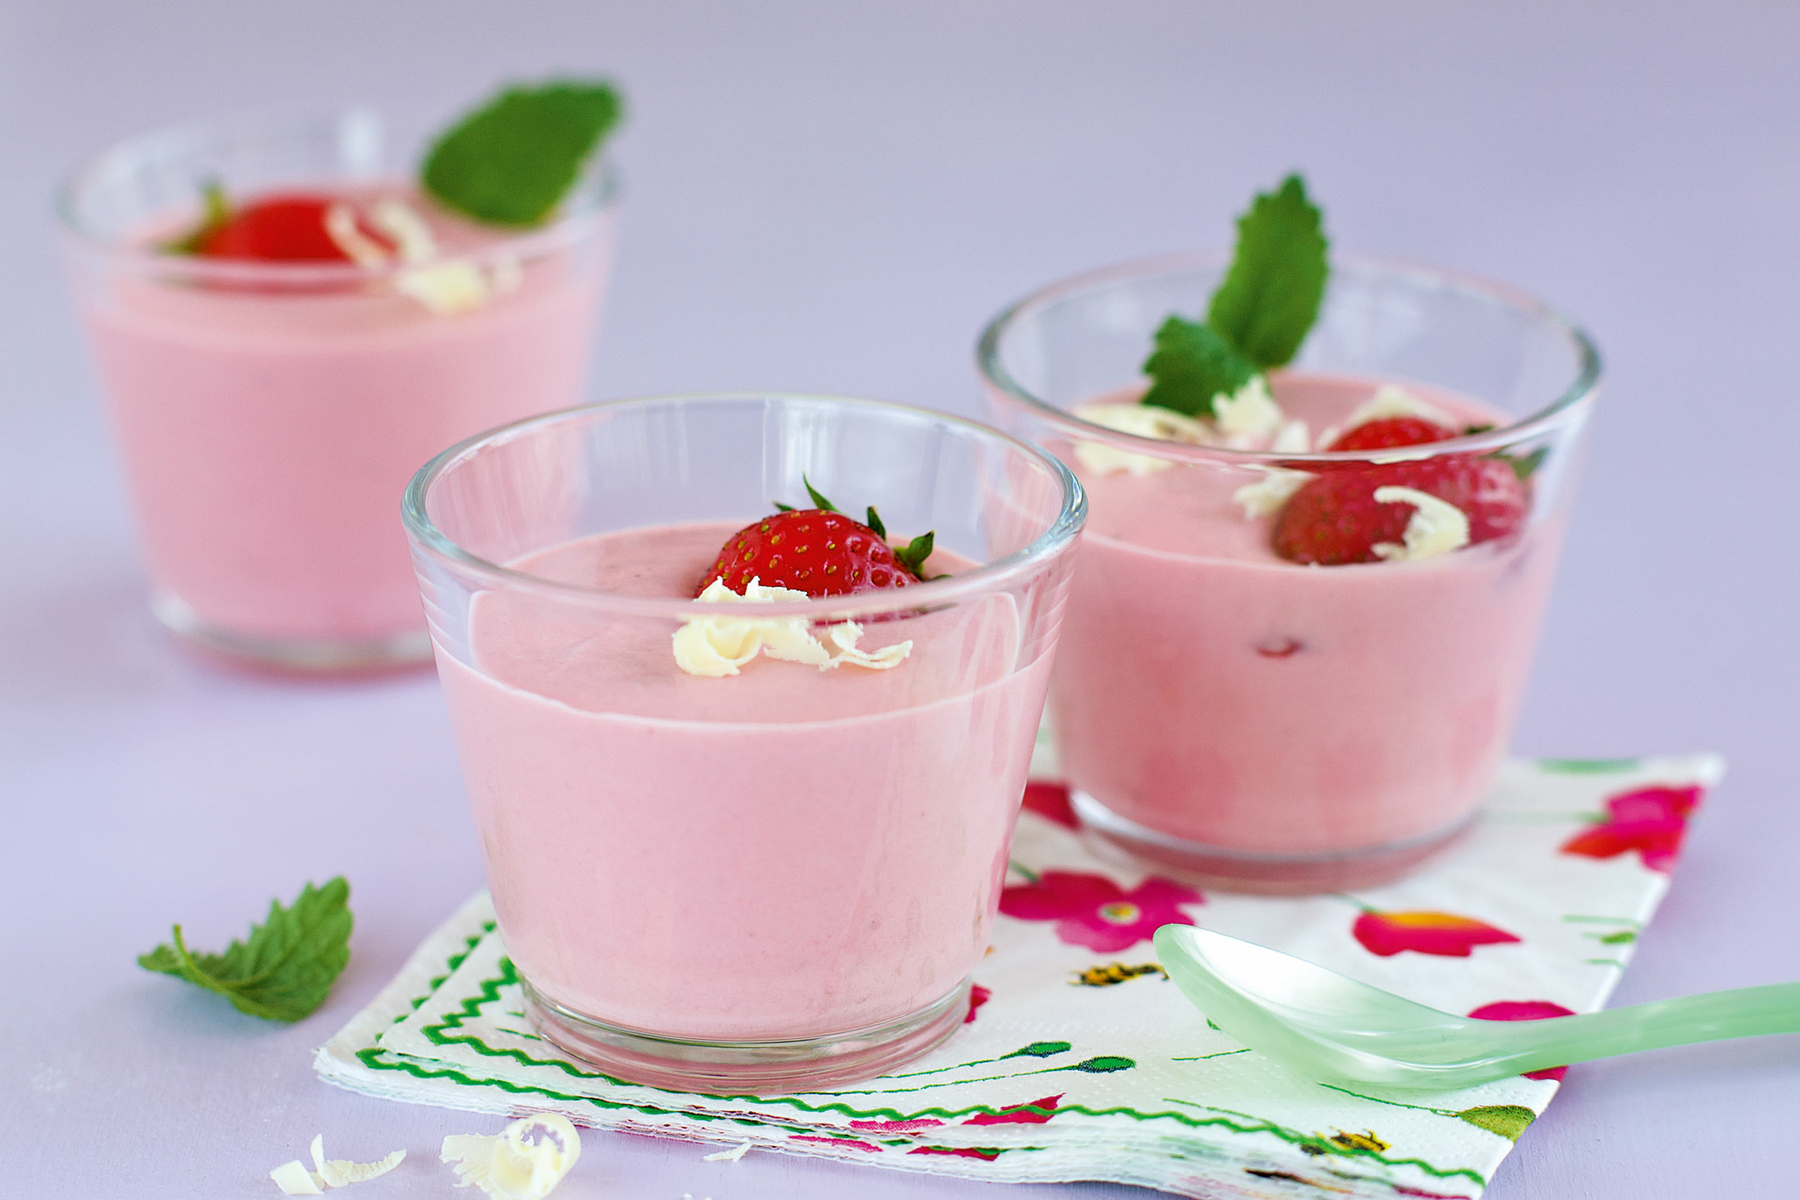 Erdbeercreme Dessert — Rezepte Suchen